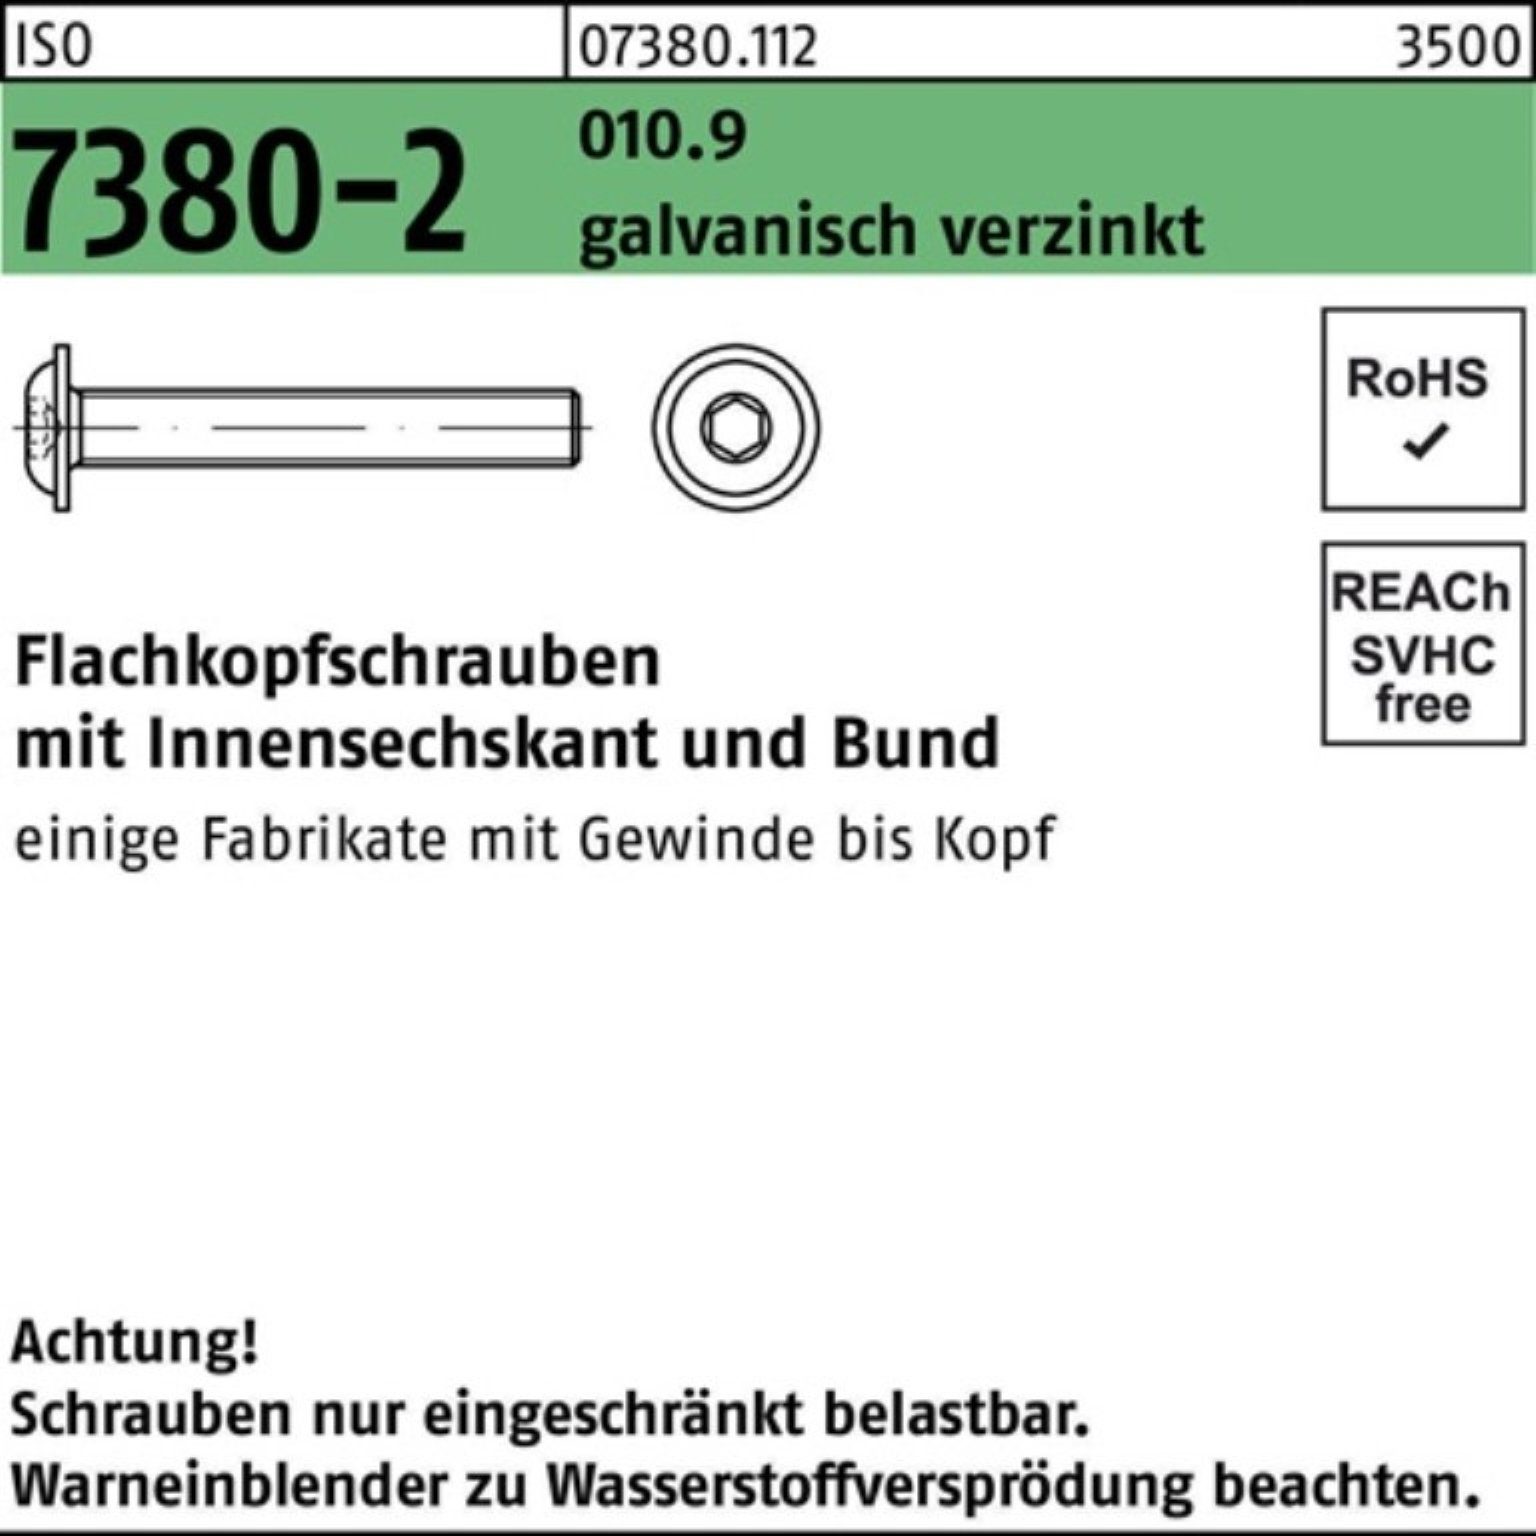 Reyher Schraube 500er Pack Flachkopfschraube Bund/Innen-6kt 010.9 7380-2 M3x12 ISO gal